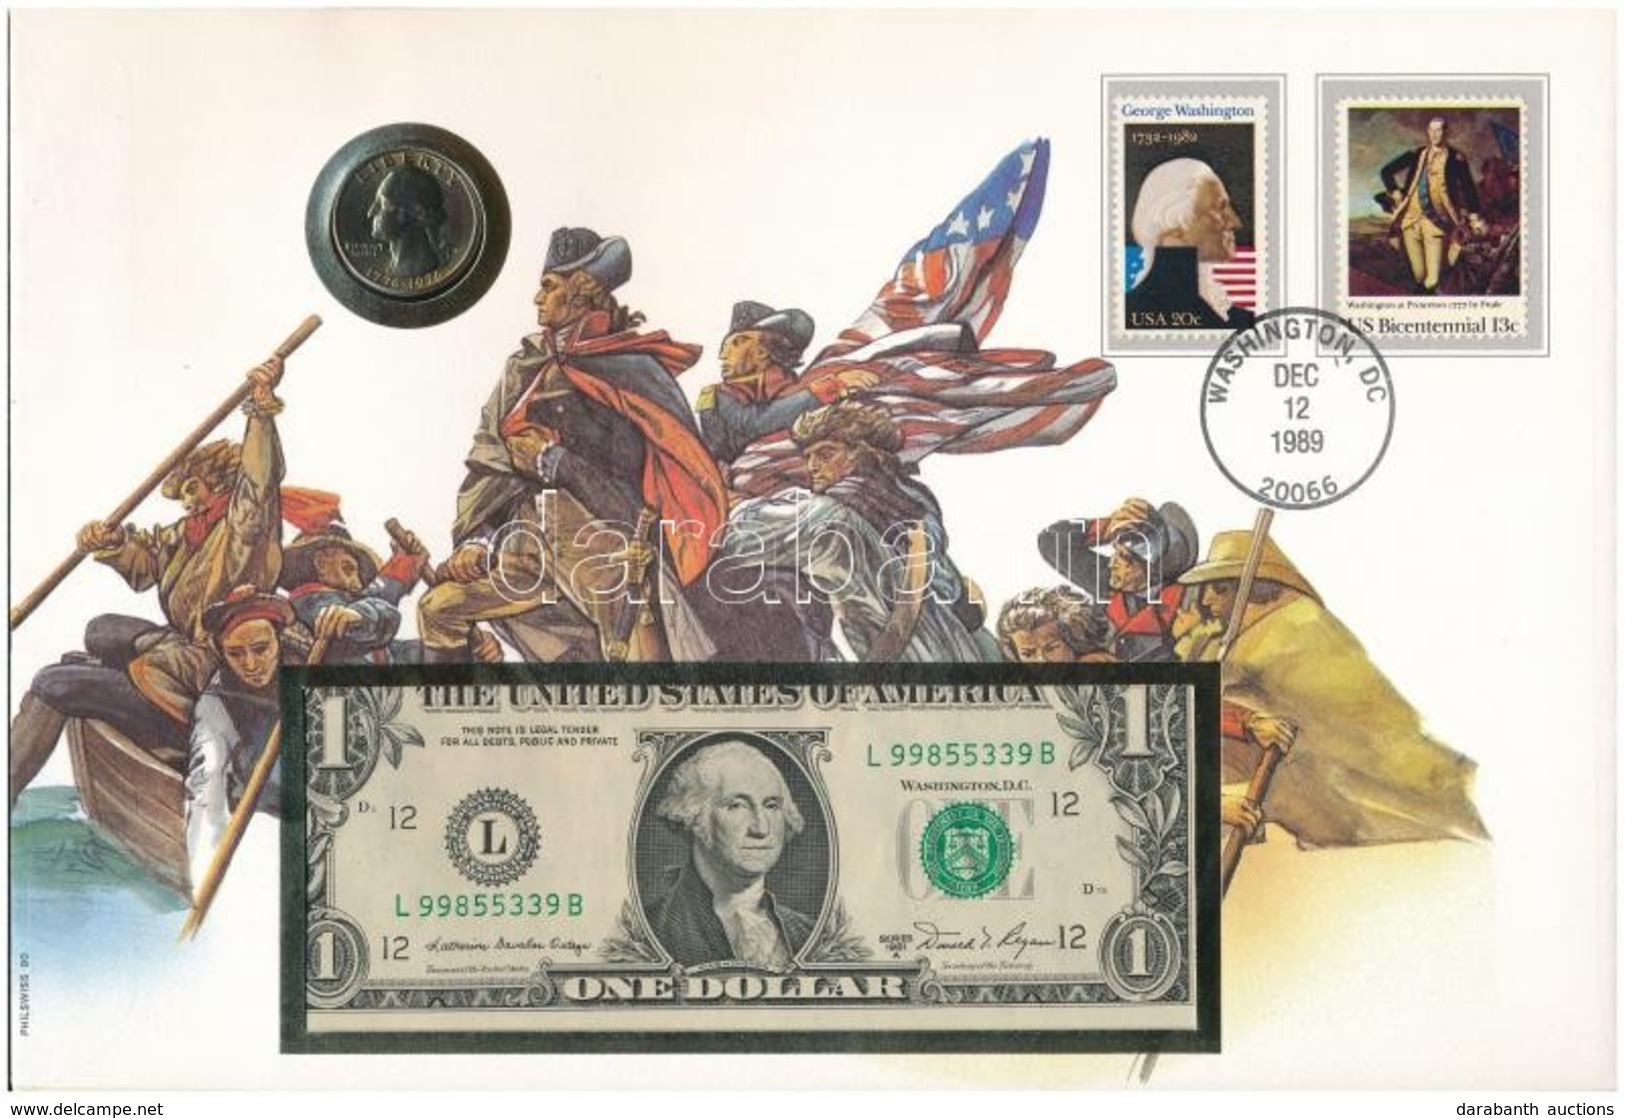 Amerikai Egyesült Államok érmés és Bankjegyes, Pecsételt Boríték Benne 1976. 25c Cu-Ni érmével és 1981. 2$ Bankjeggyel A - Non Classés